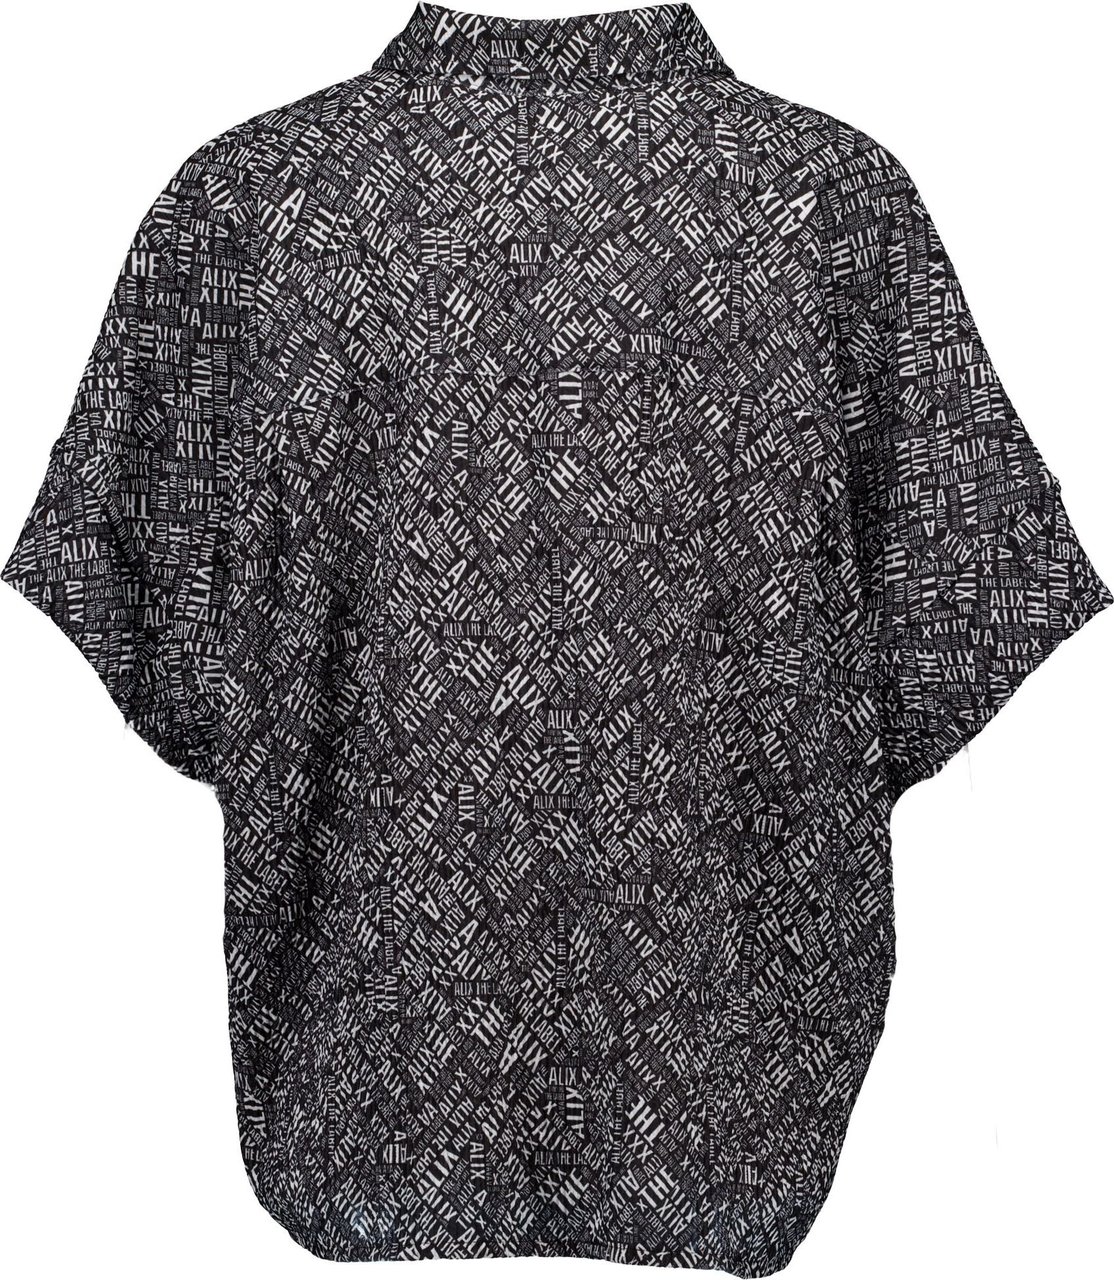 ALIX Crinkle tekst oversized blouse Zwart